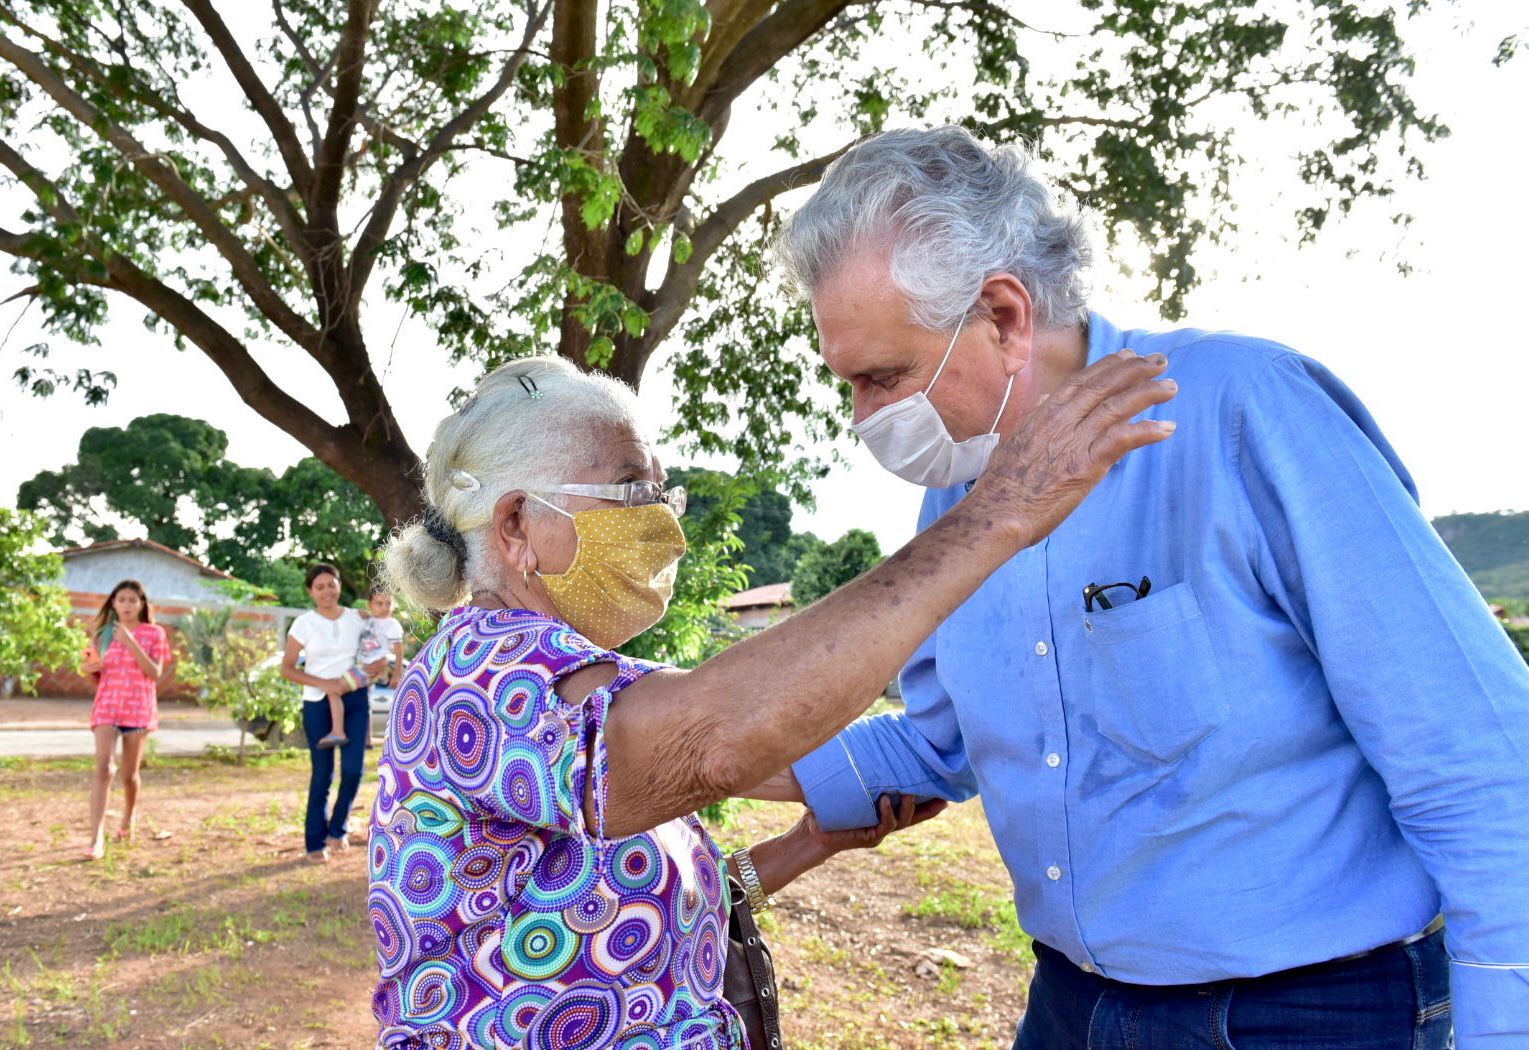 Governador vistoria Guarani de Goiás e Nova Roma (RO) e visita pais de criança de 4 anos levada pelas águas